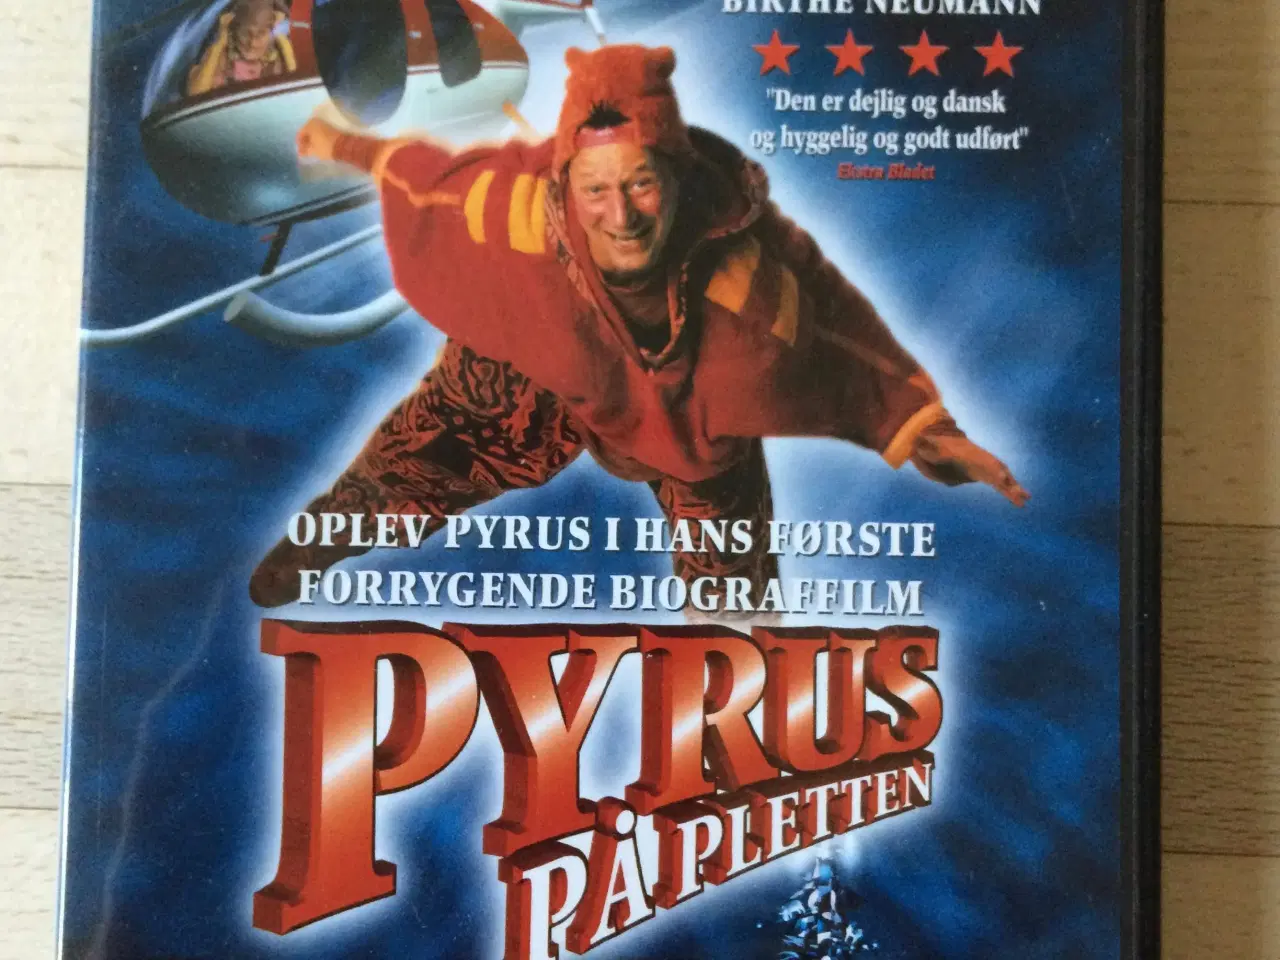 Billede 1 - Pyrus på pletten, DVD